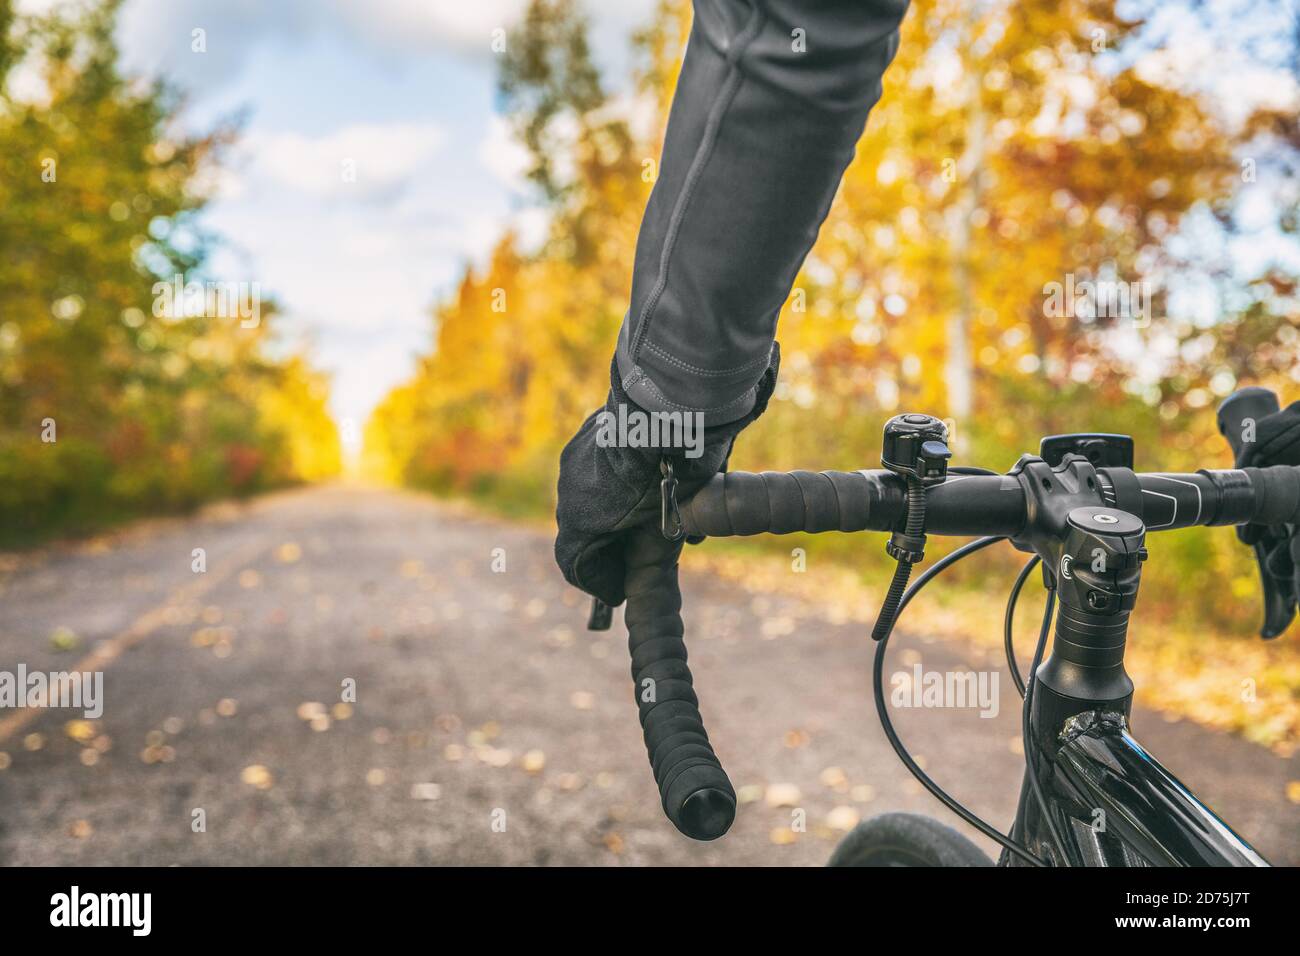 Bicicletta Vista in prima persona del ciclista di biciclette POV mostrando le mani e manubrio su strada in bicicletta a bordo di una strada all'aperto autunno natura Foto Stock